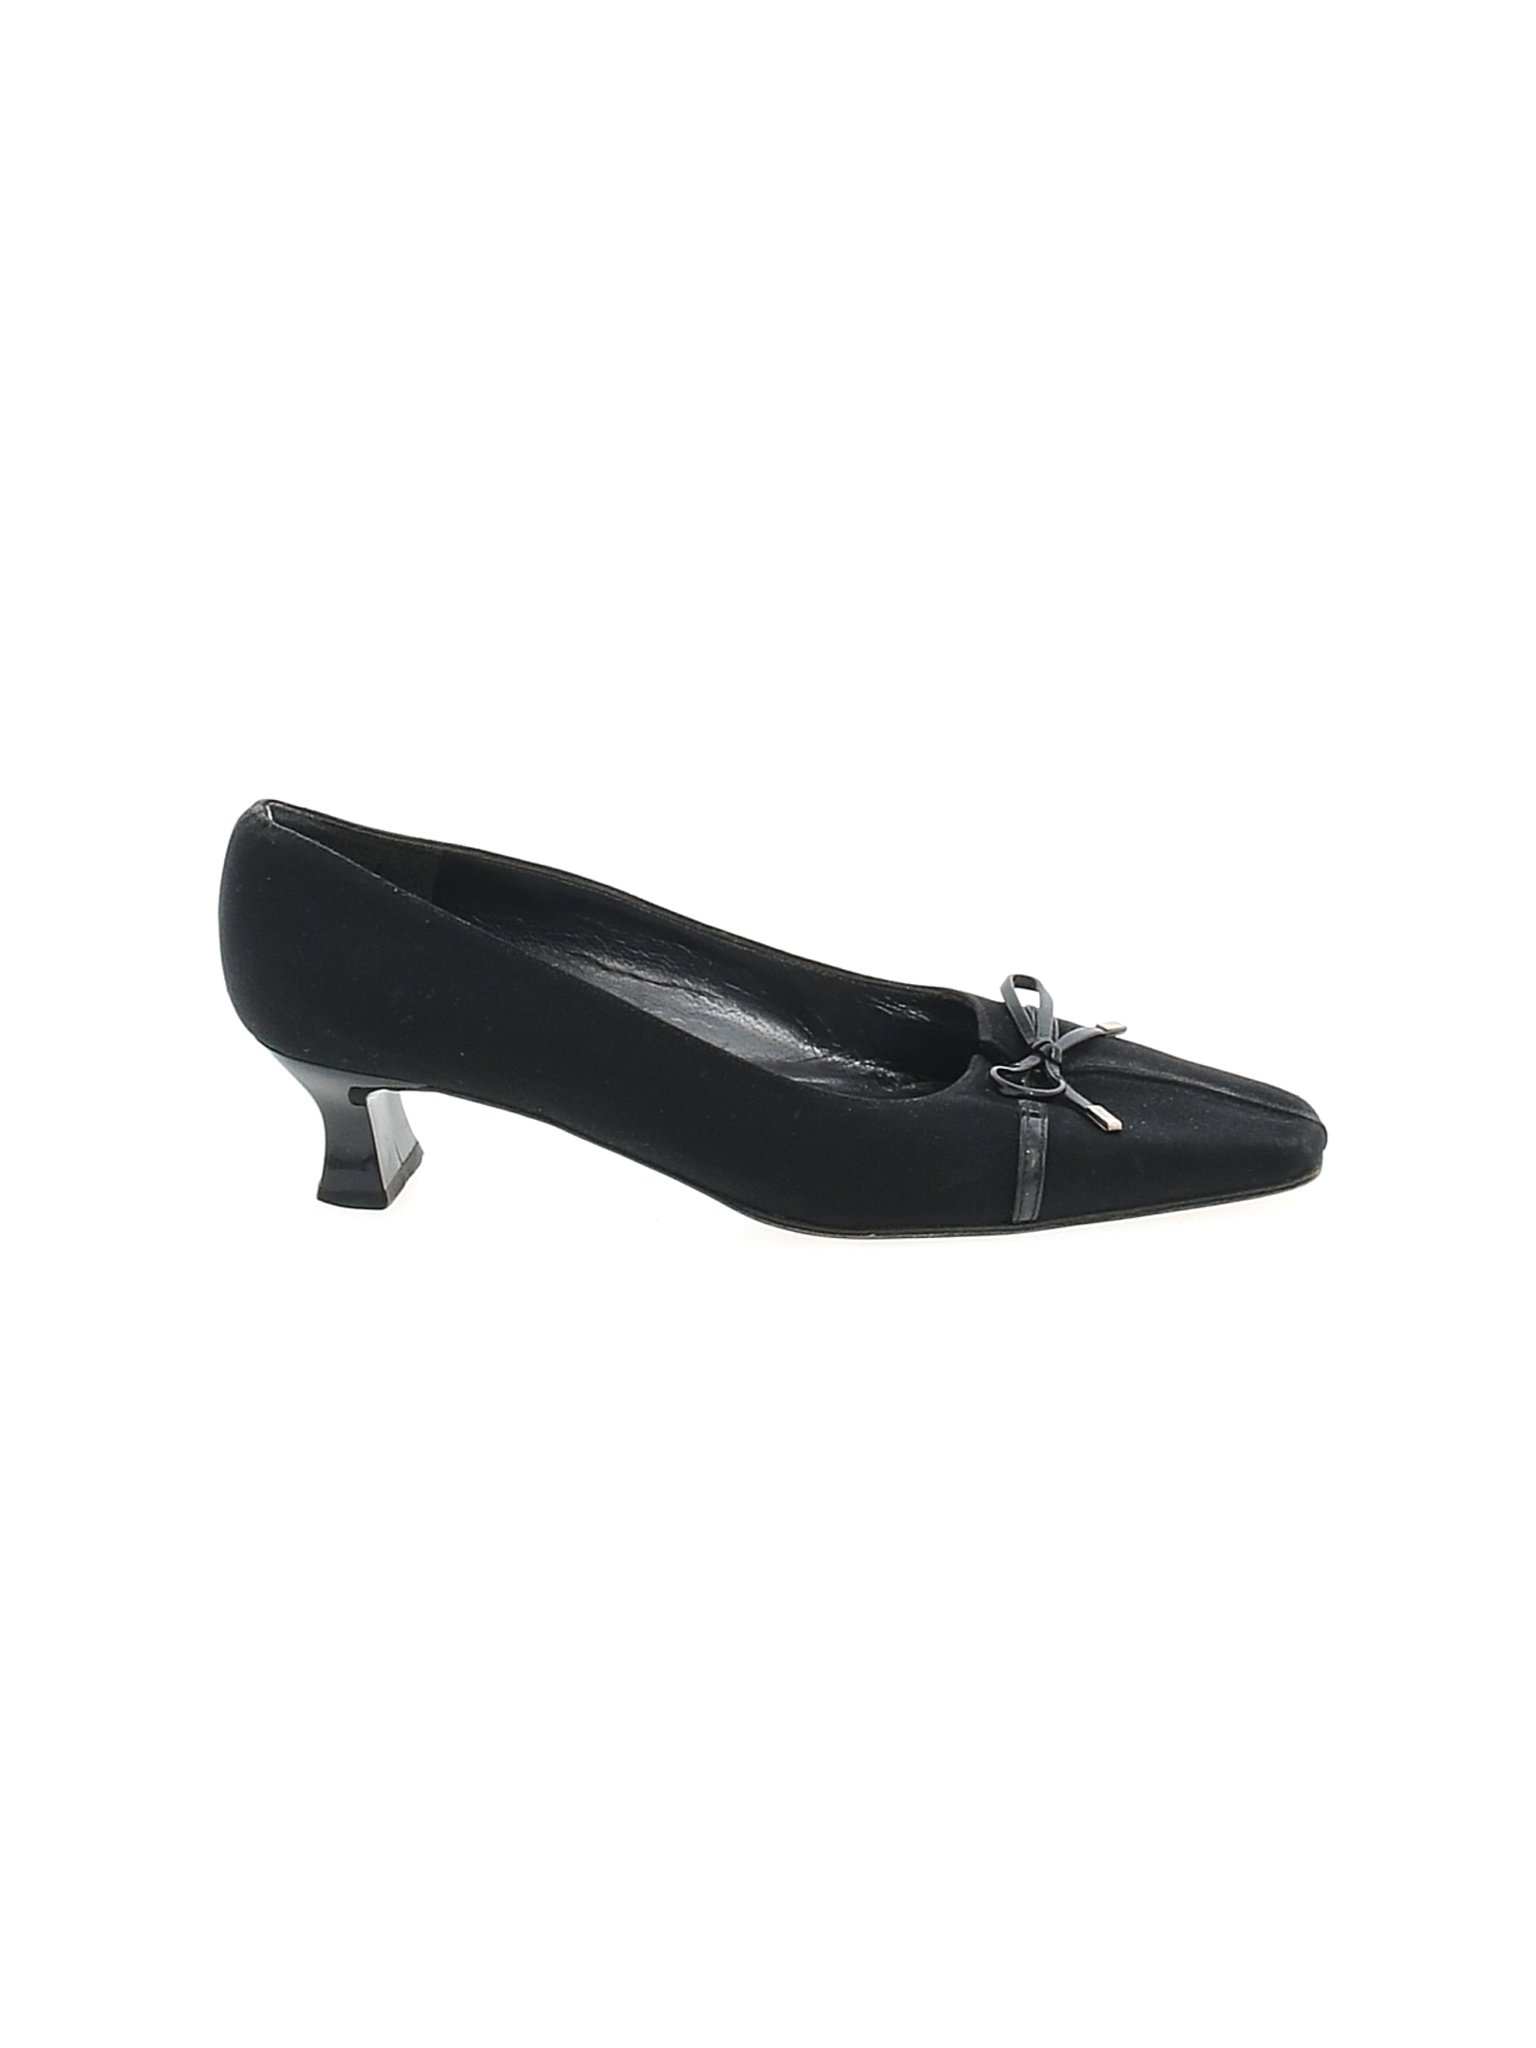 Stuart Weitzman Women Black Heels US 7.5 | eBay